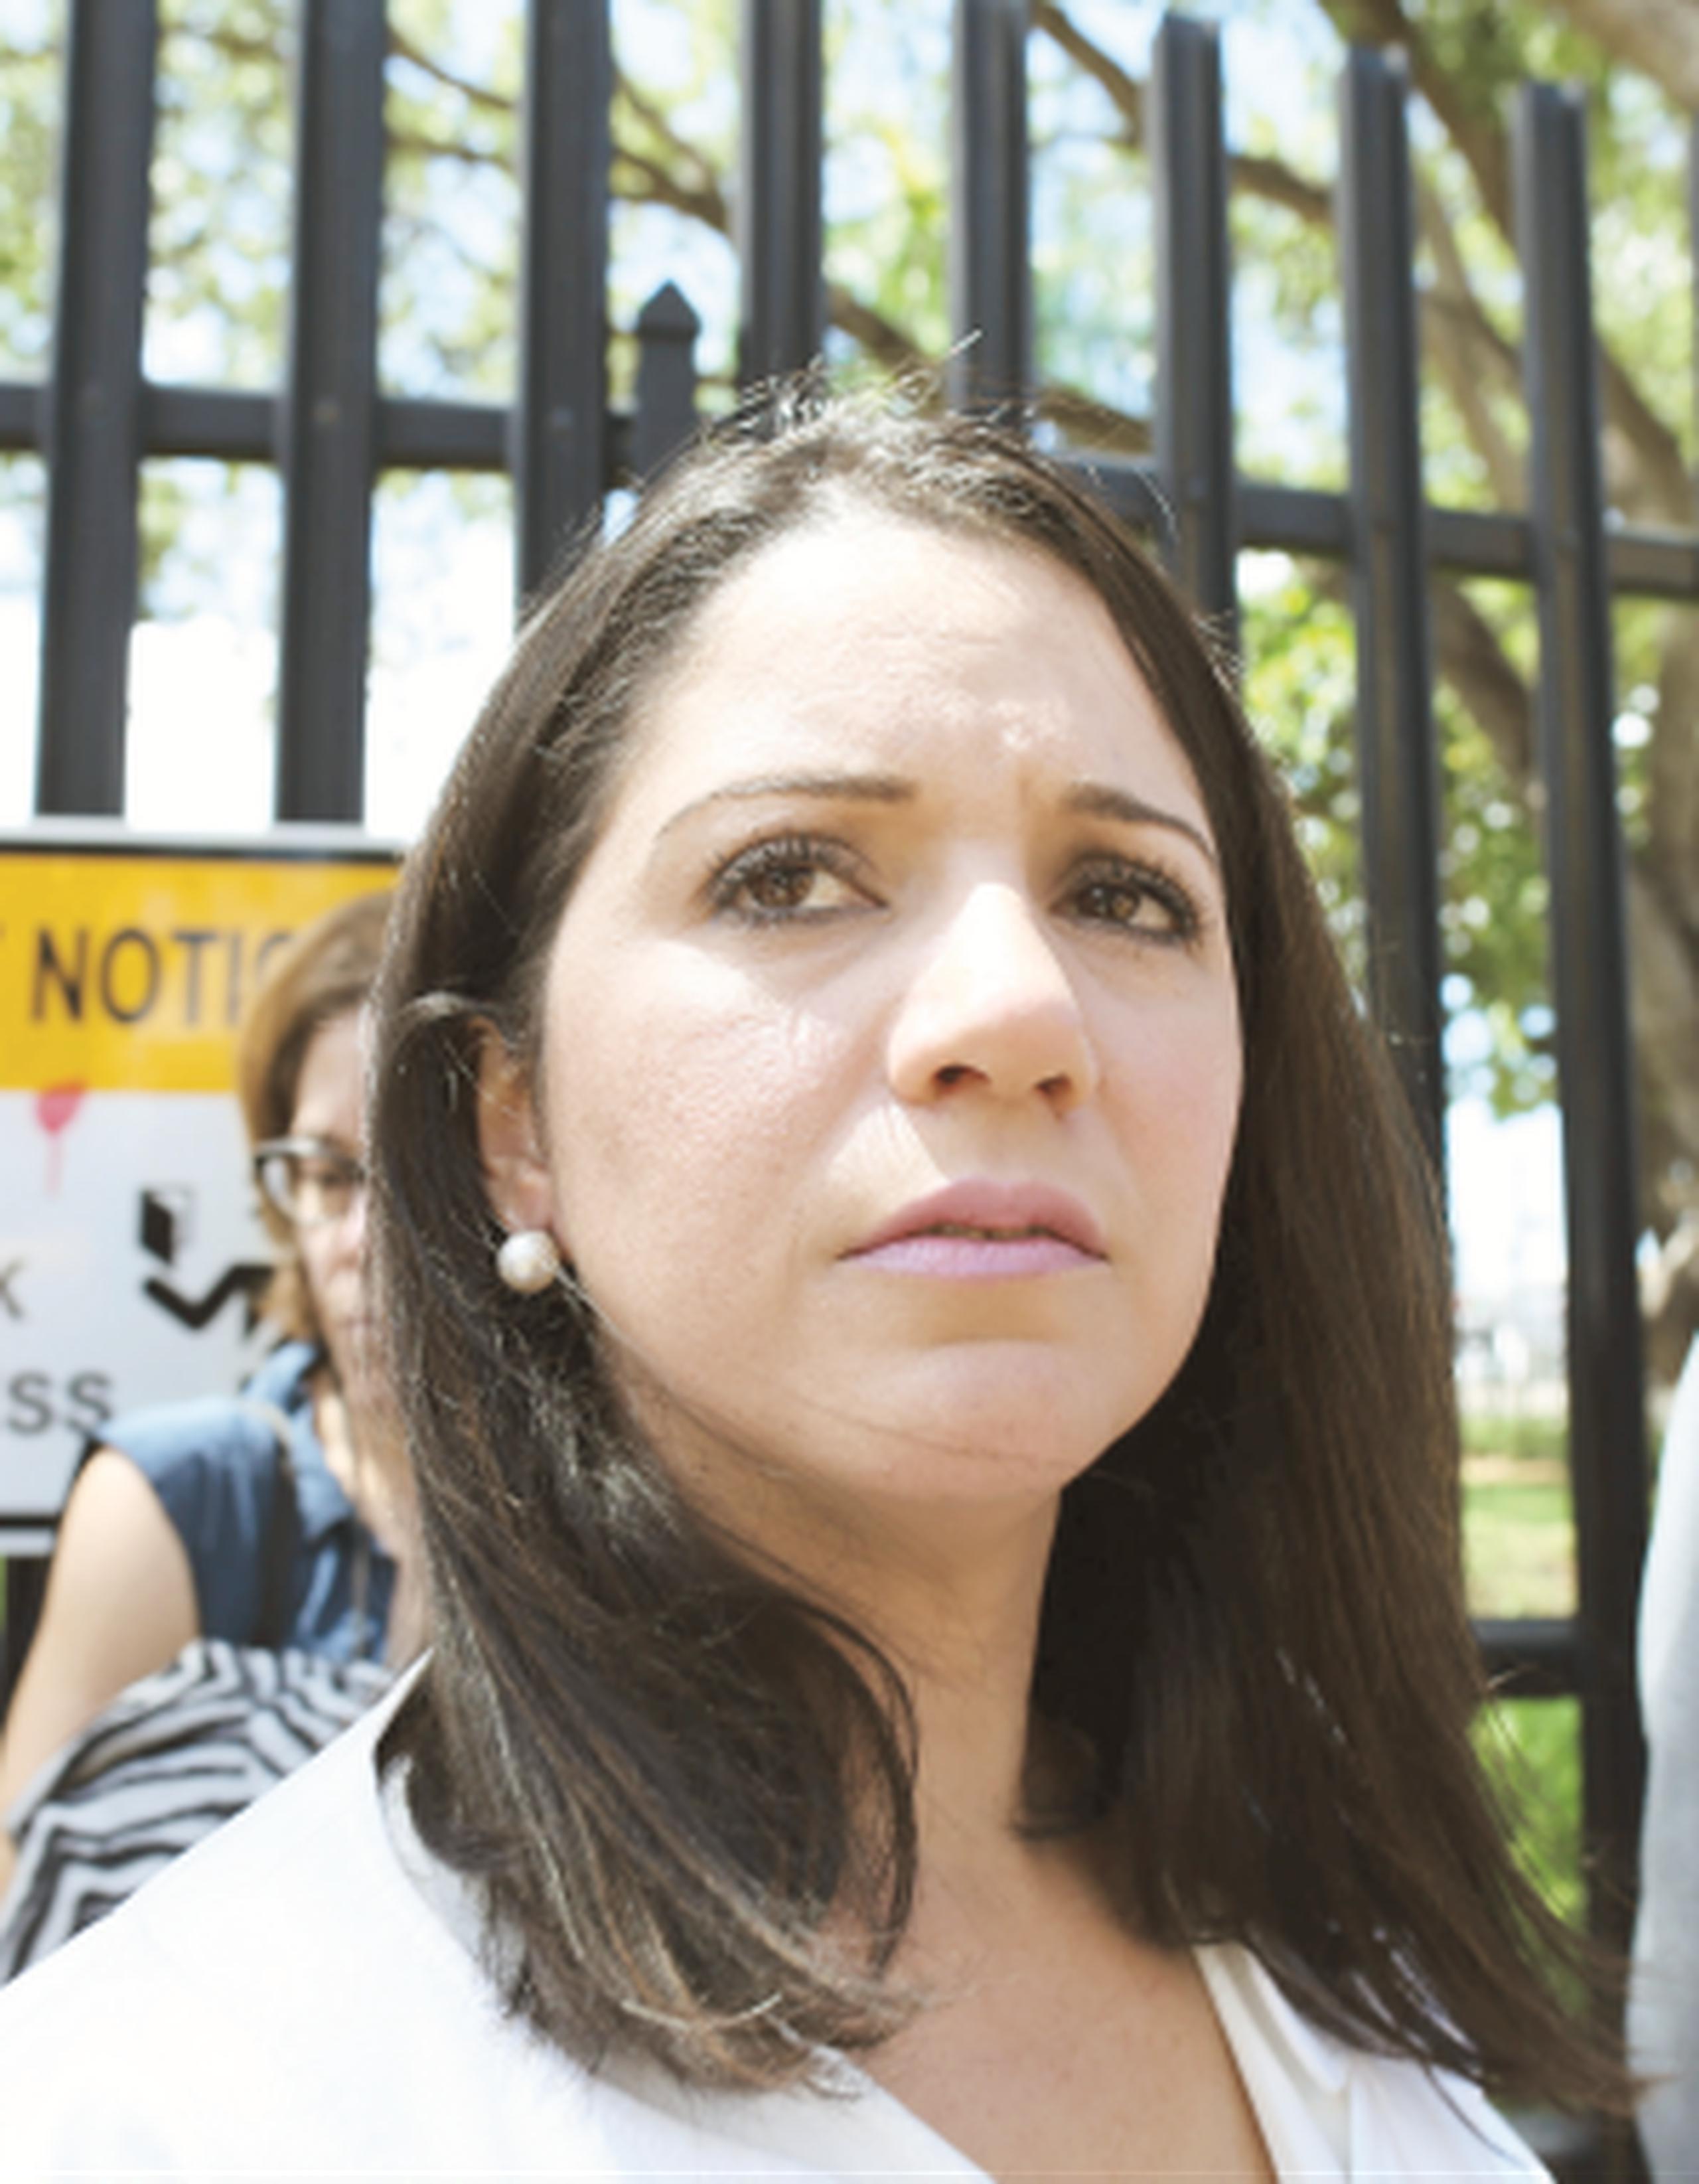 La exadministradora de la Administración de Desarrollo Laboral, Sally López, dijo a su salida del tribunal que no se arrepiente de su gestión en el servicio público. (vanessa.serra@gfrmedia.com)